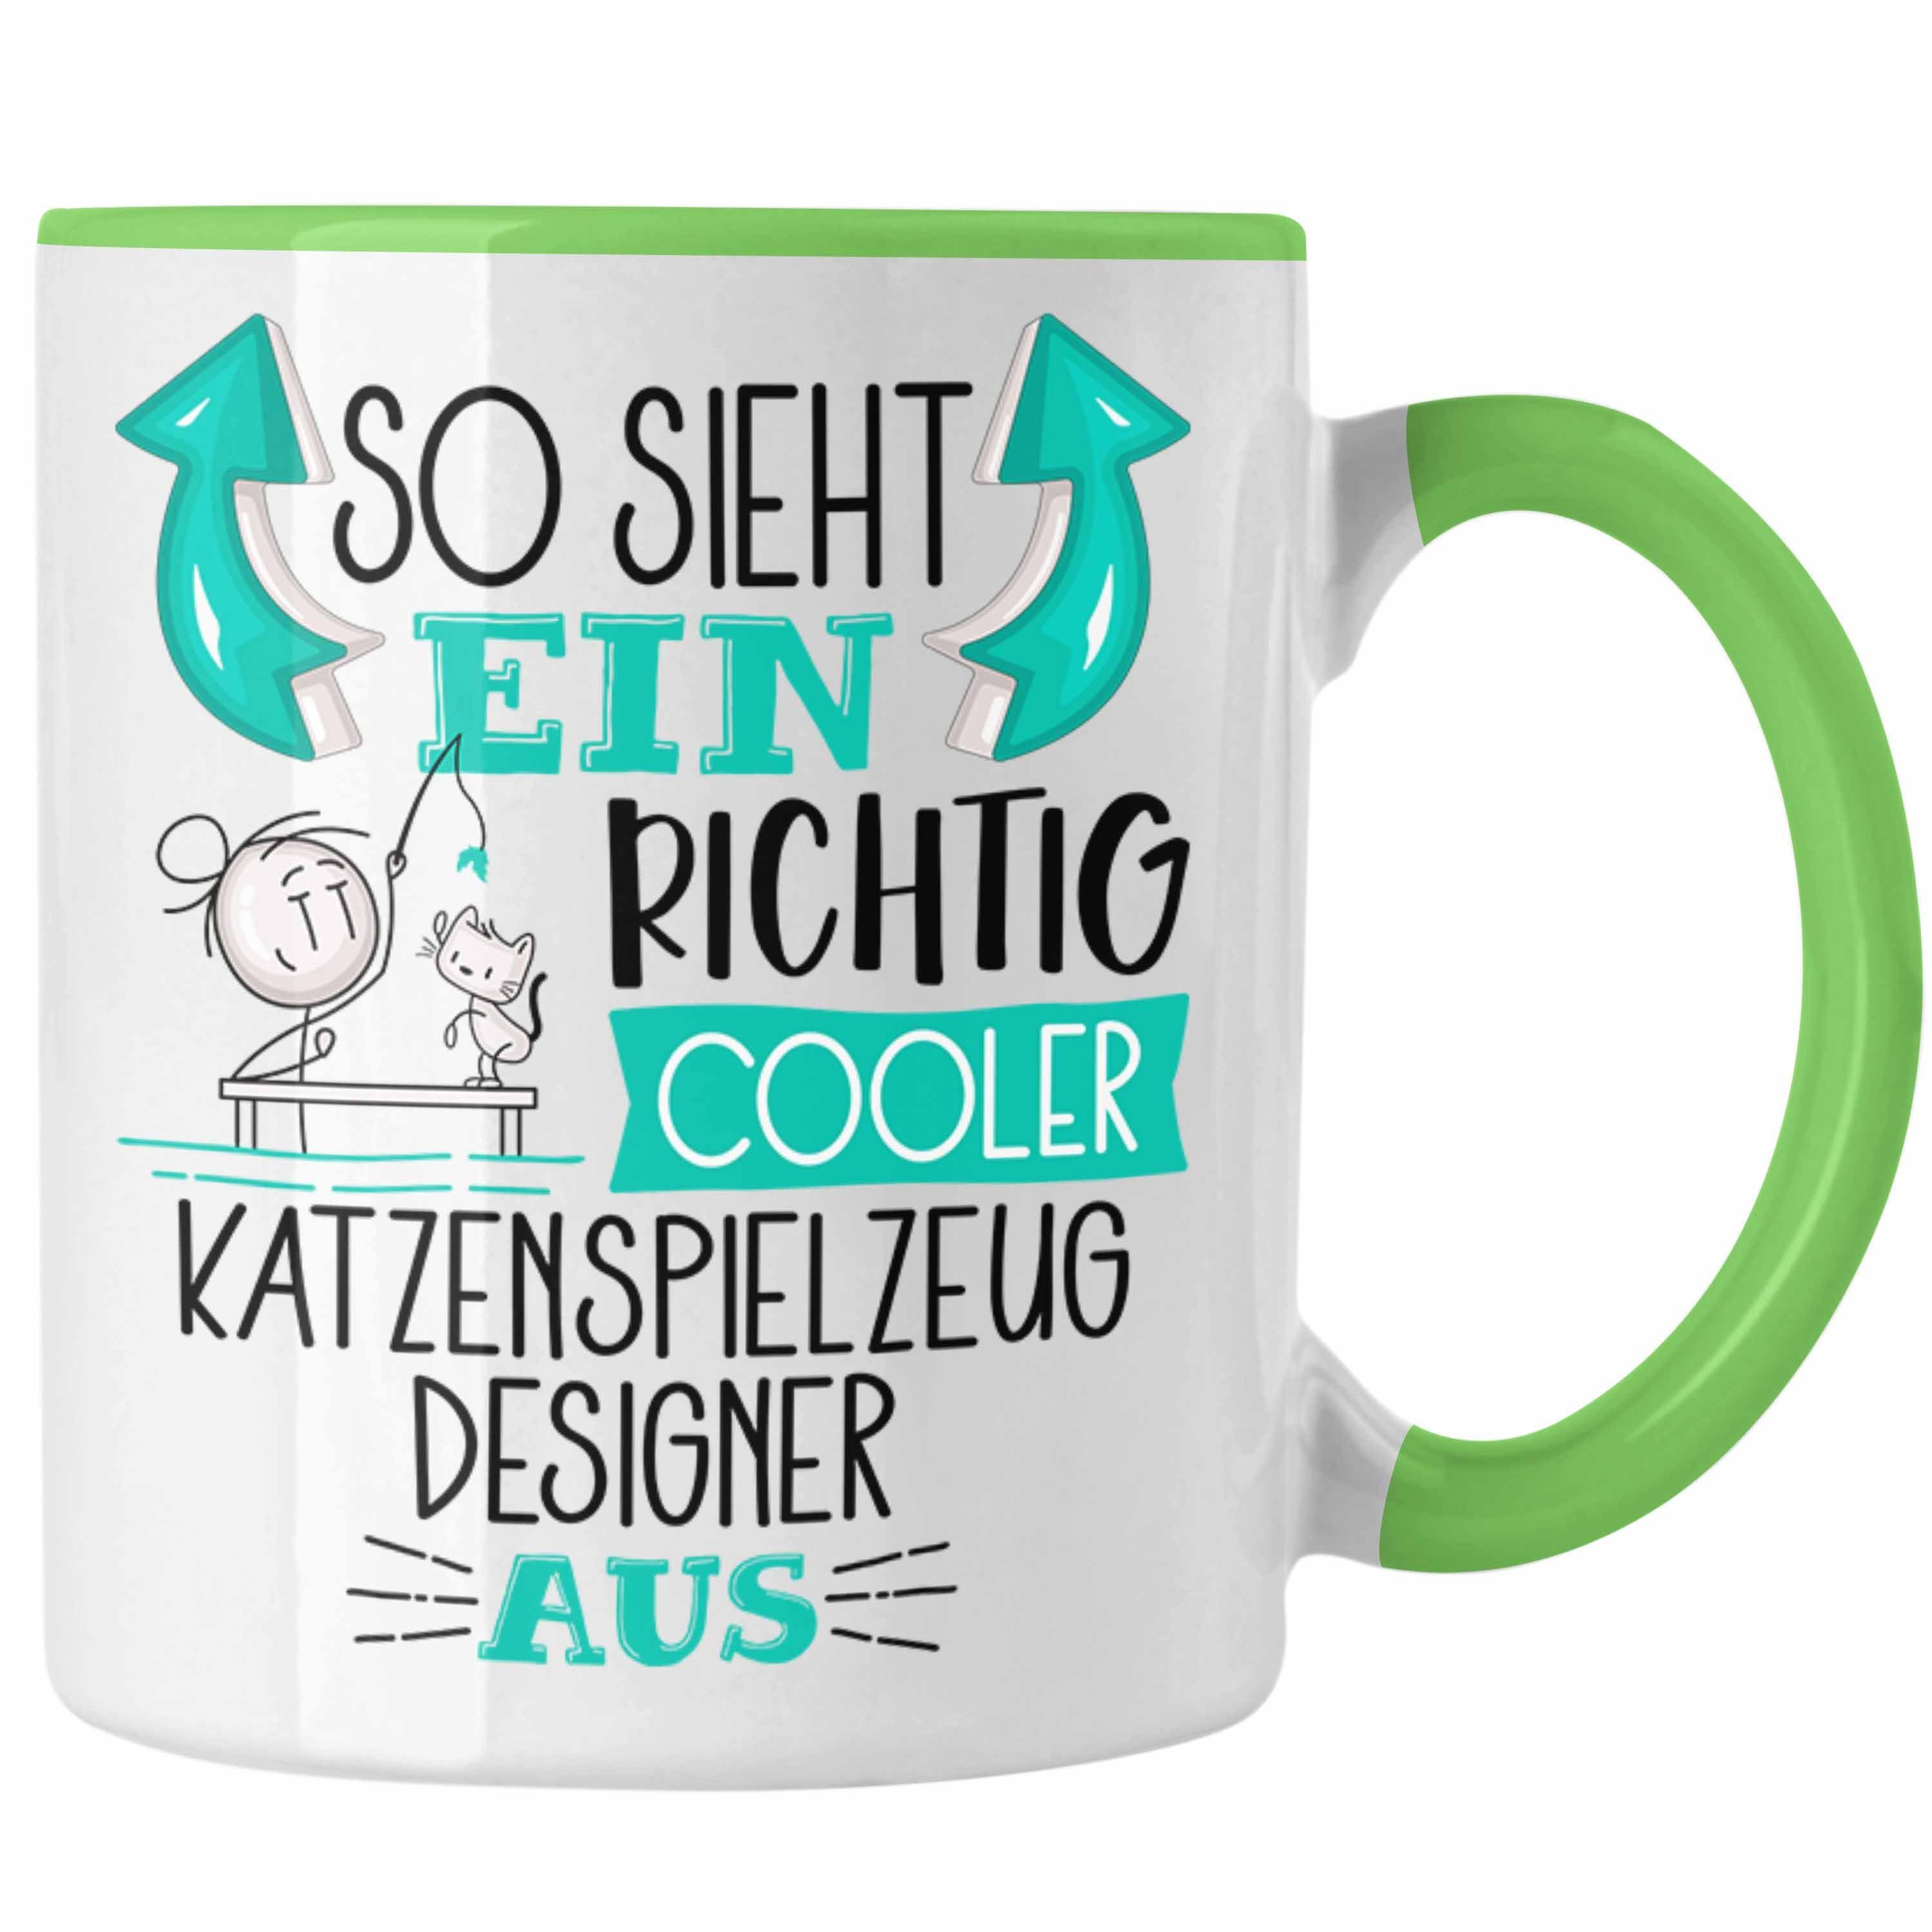 Trendation Tasse Katzenspielzeug-Designer Tasse So Grün Sieht Cooler Richtig Katzenspiel Ein